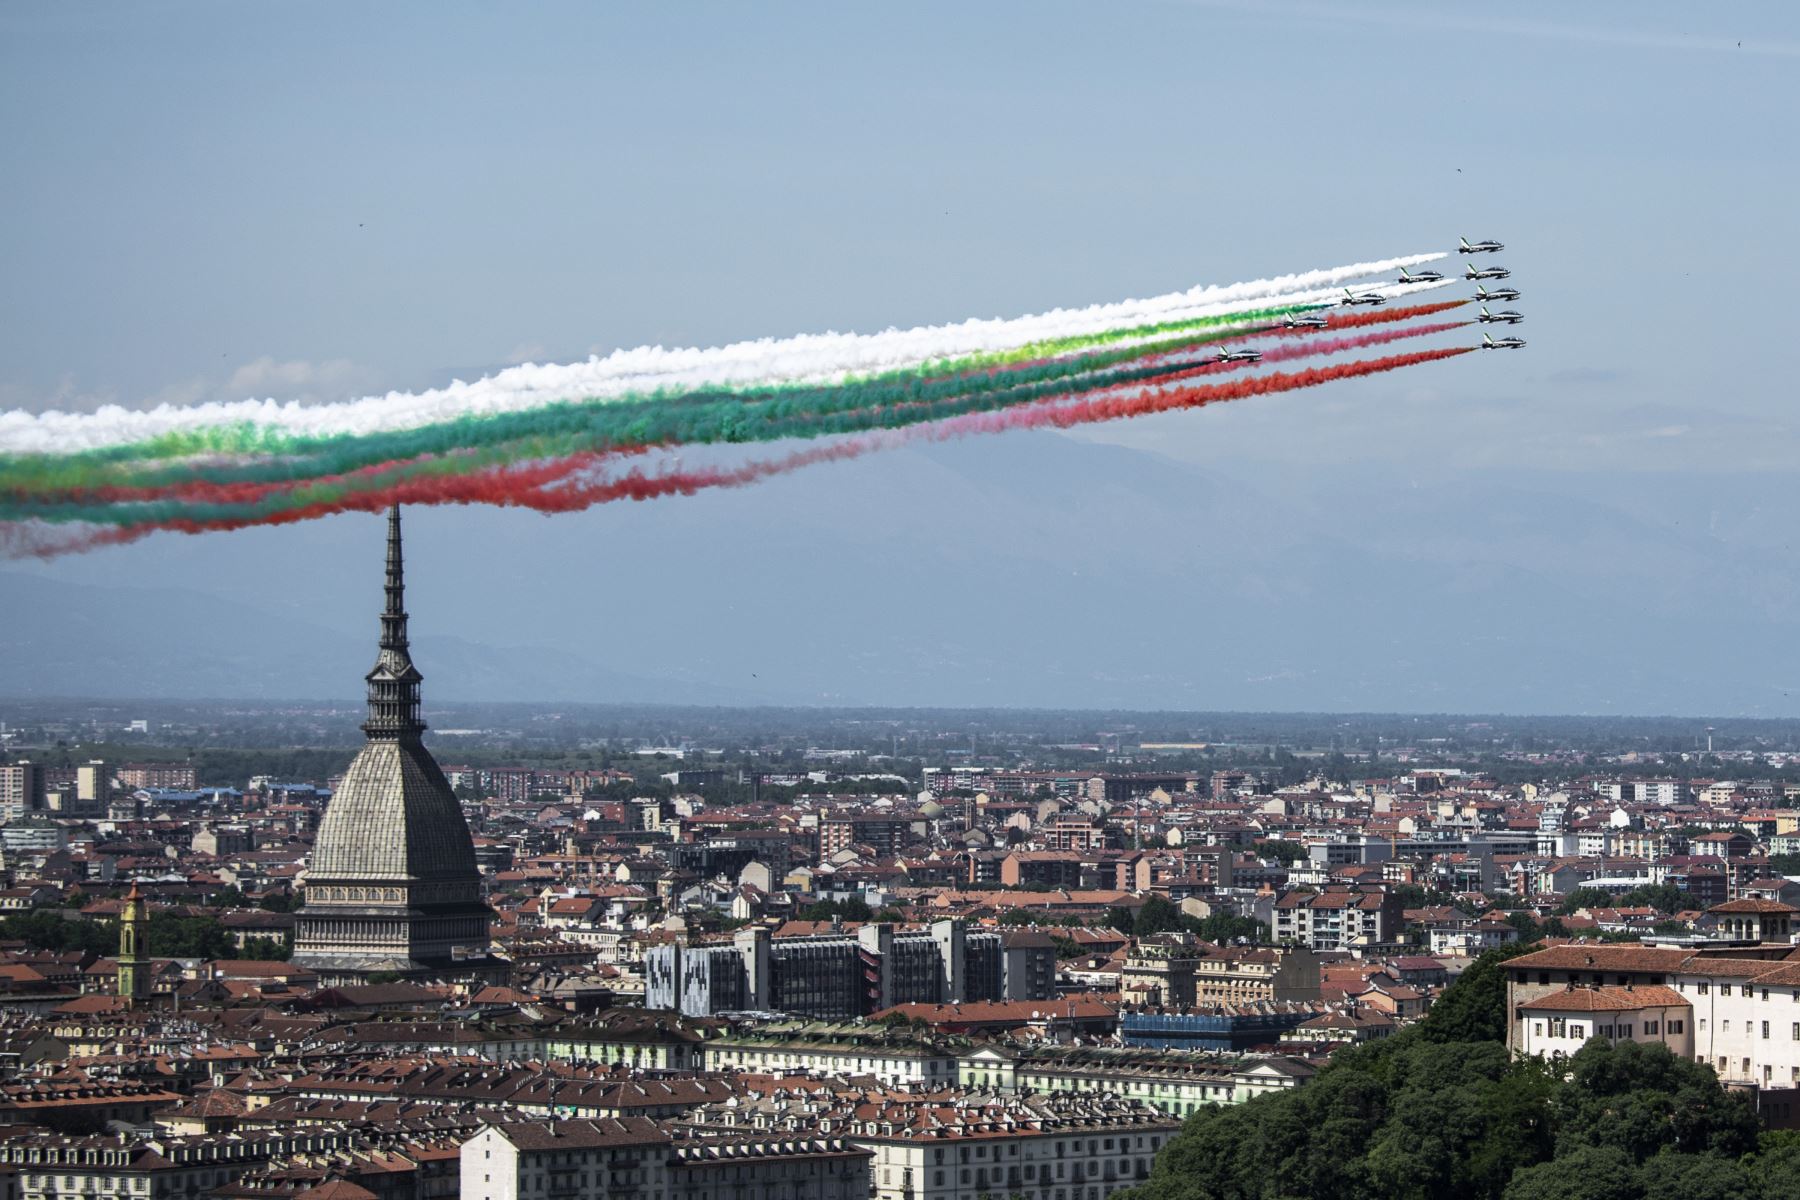 La unidad acrobática italiana de la Fuerza Aérea Frecce Tricolori (Flechas tricolores) actúa sobre Turín como parte de la iniciativa militar aeronáutica "Abbraccio Tricolore". Foto: AFP